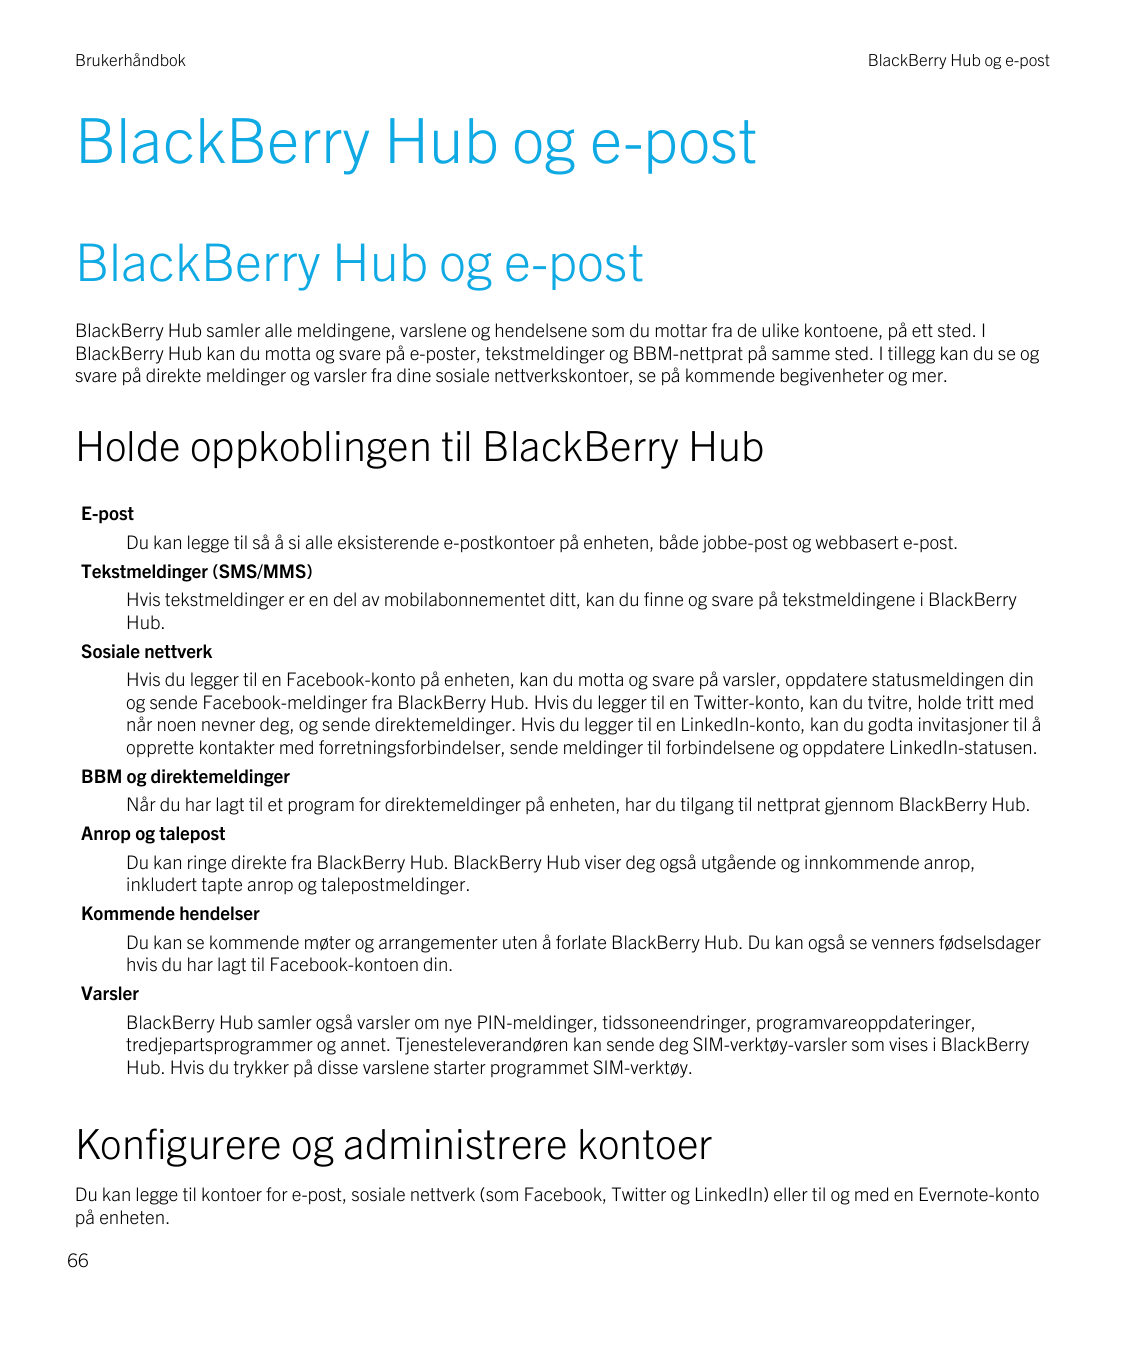 BrukerhåndbokBlackBerry Hub og e-postBlackBerry Hub og e-postBlackBerry Hub og e-postBlackBerry Hub samler alle meldingene, vars